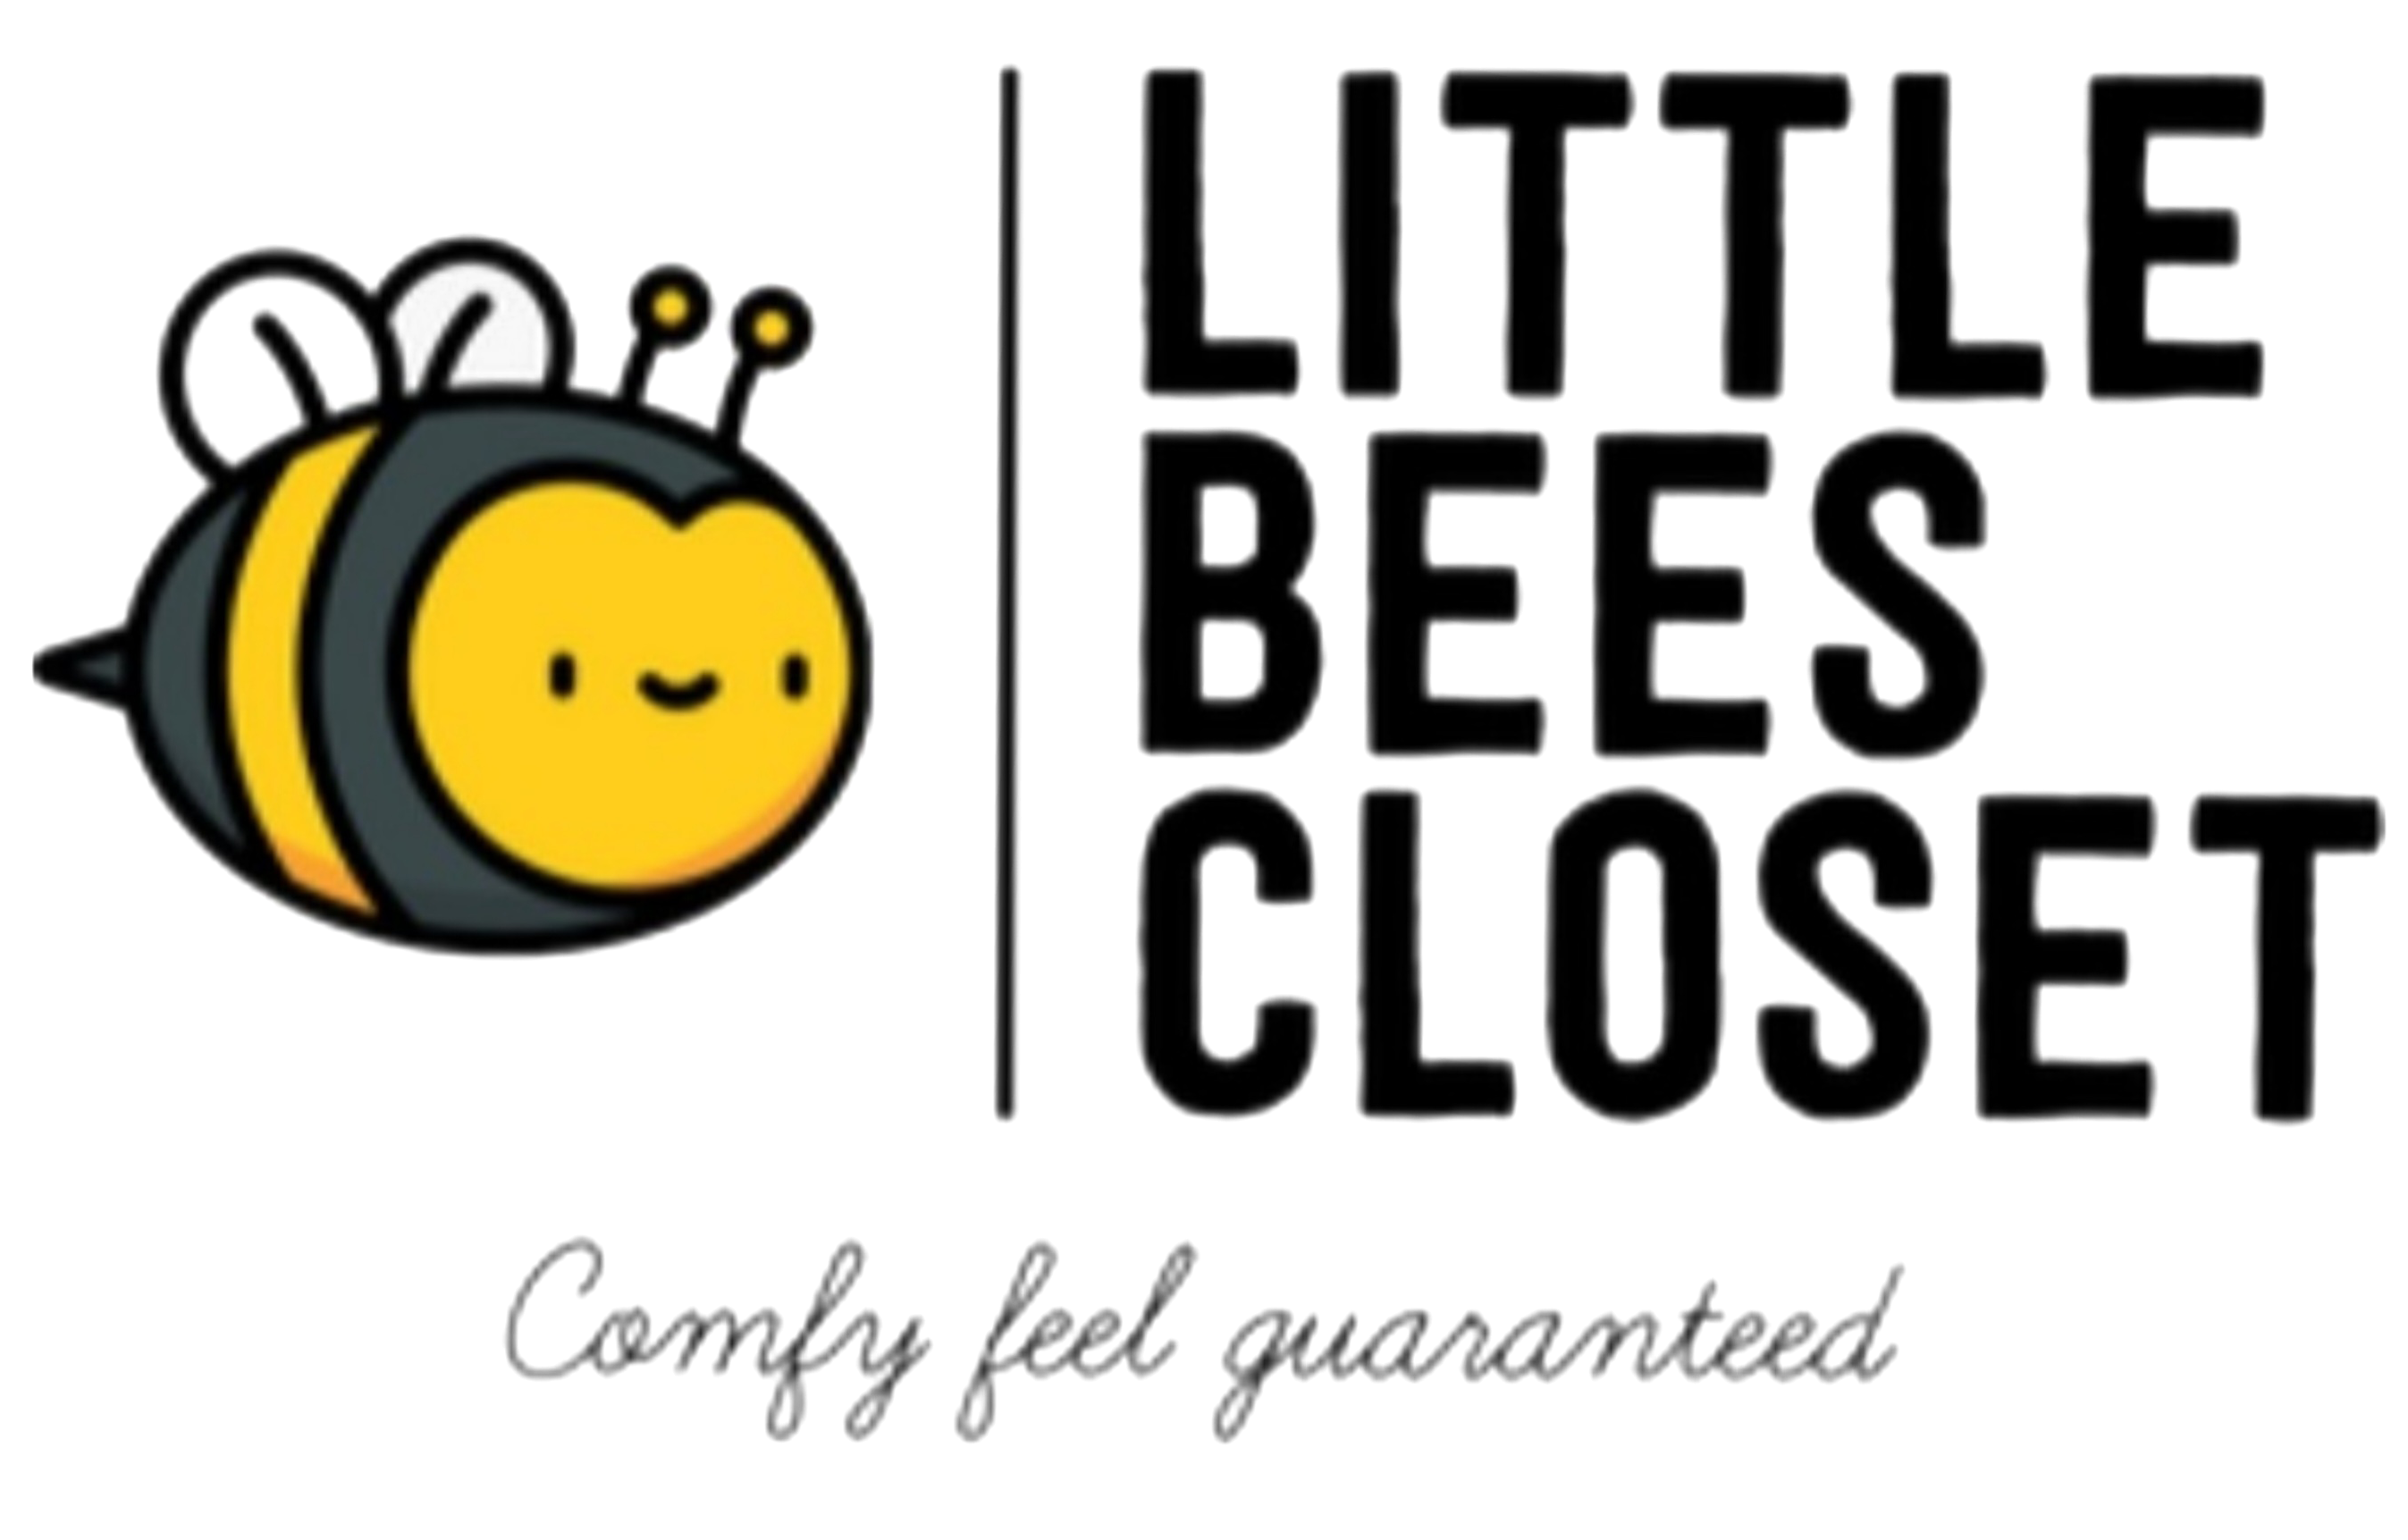 Little Bees Closet